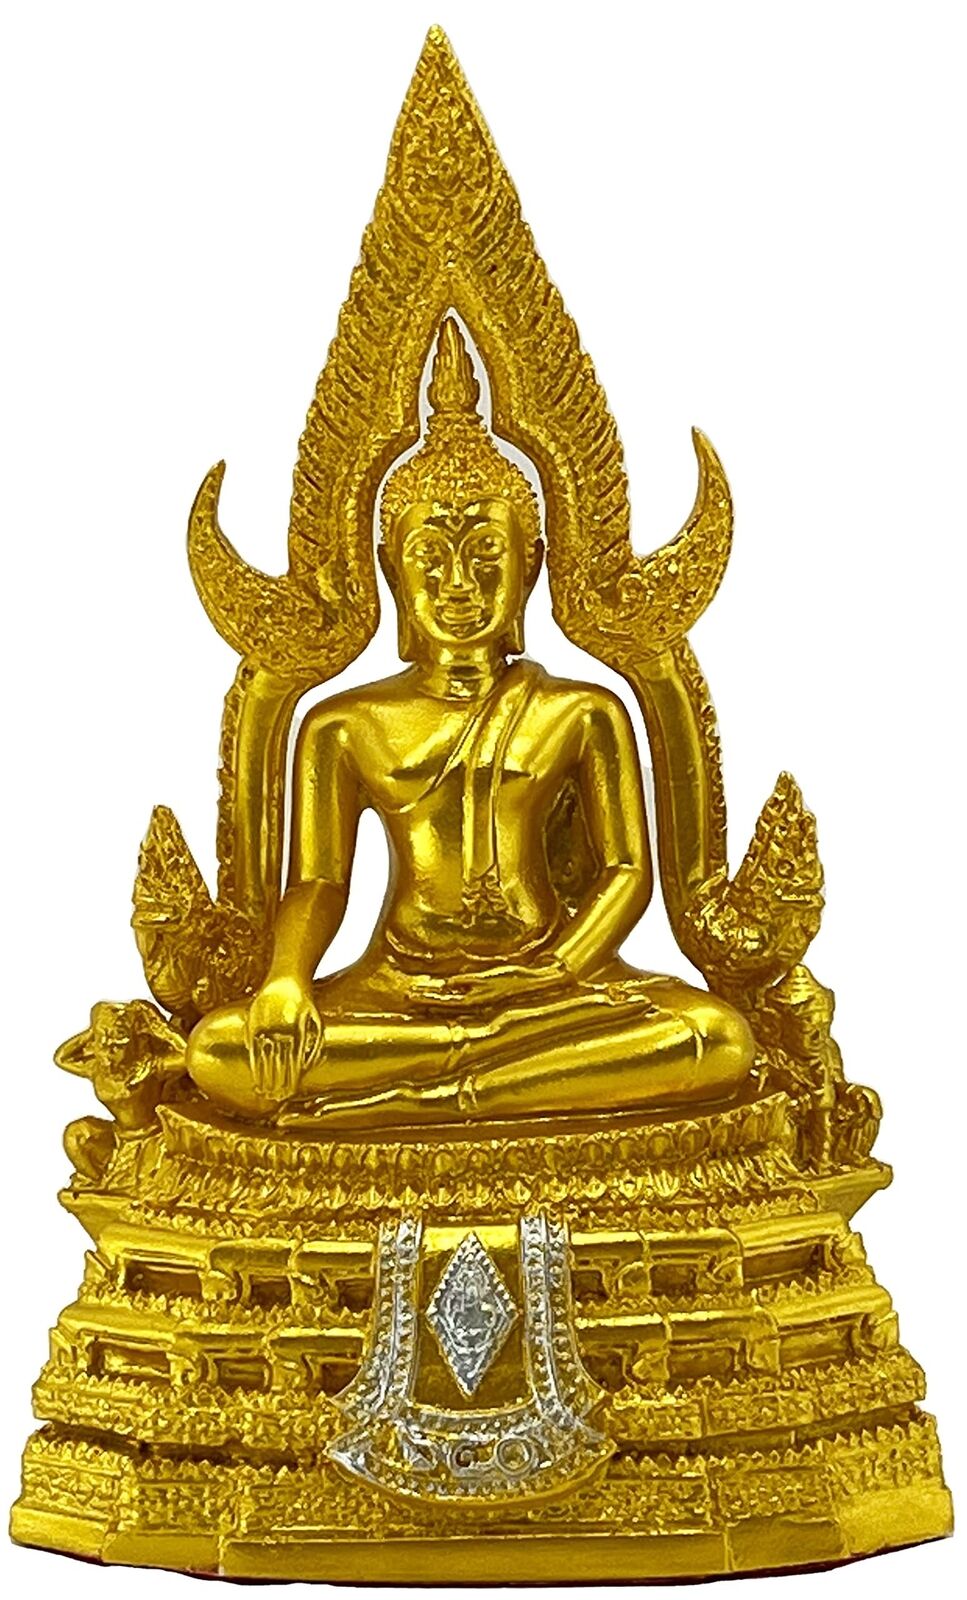 Chinnaraj Buddha StatueThai Buddha Statue for Home Decor 8